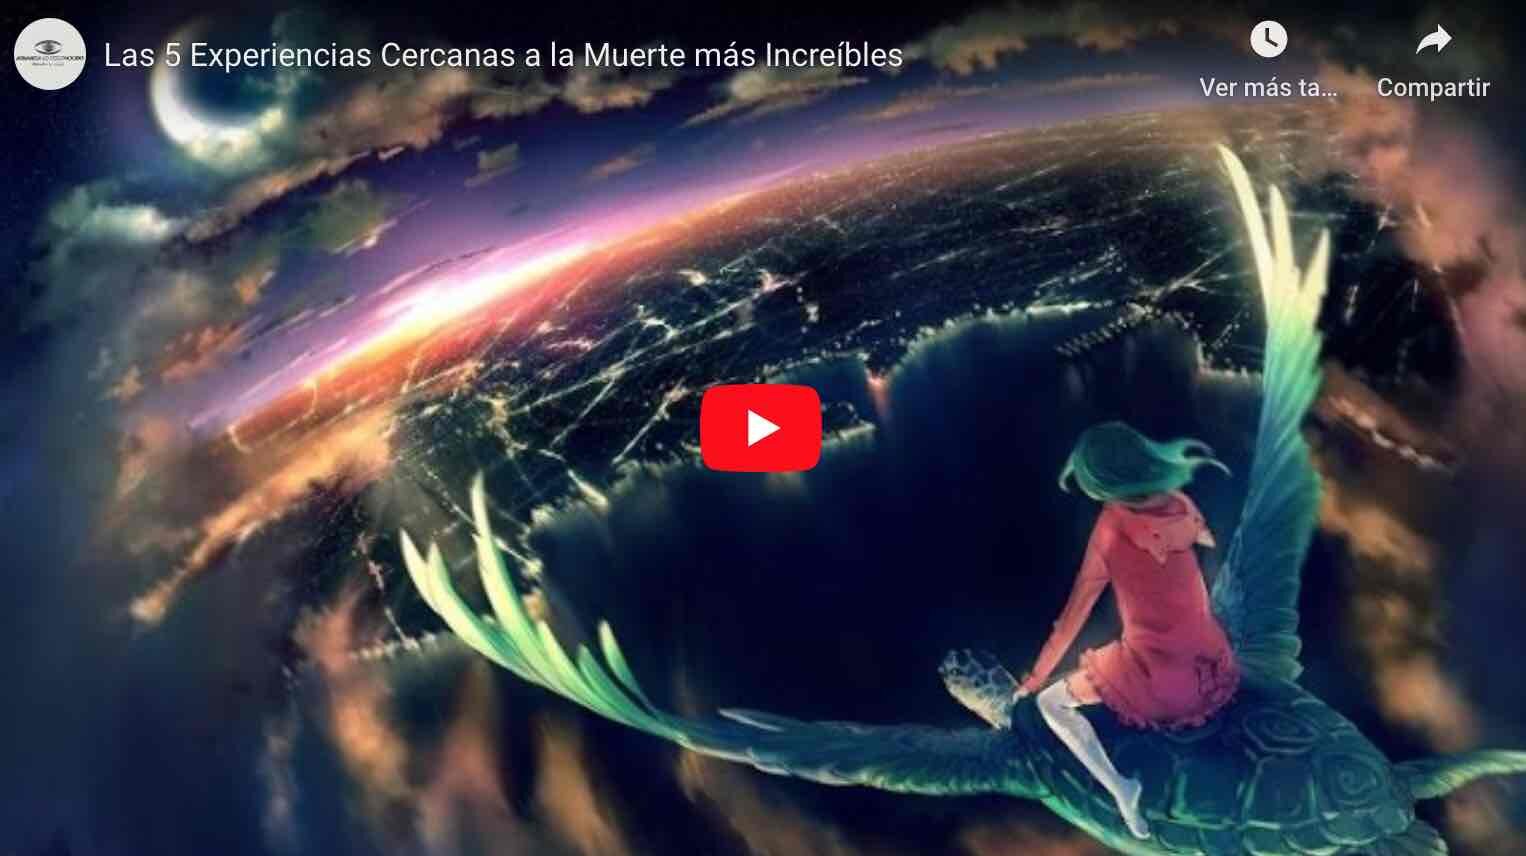 VIDEO: Las 5 Experiencias Cercanas a la Muerte más Increíbles